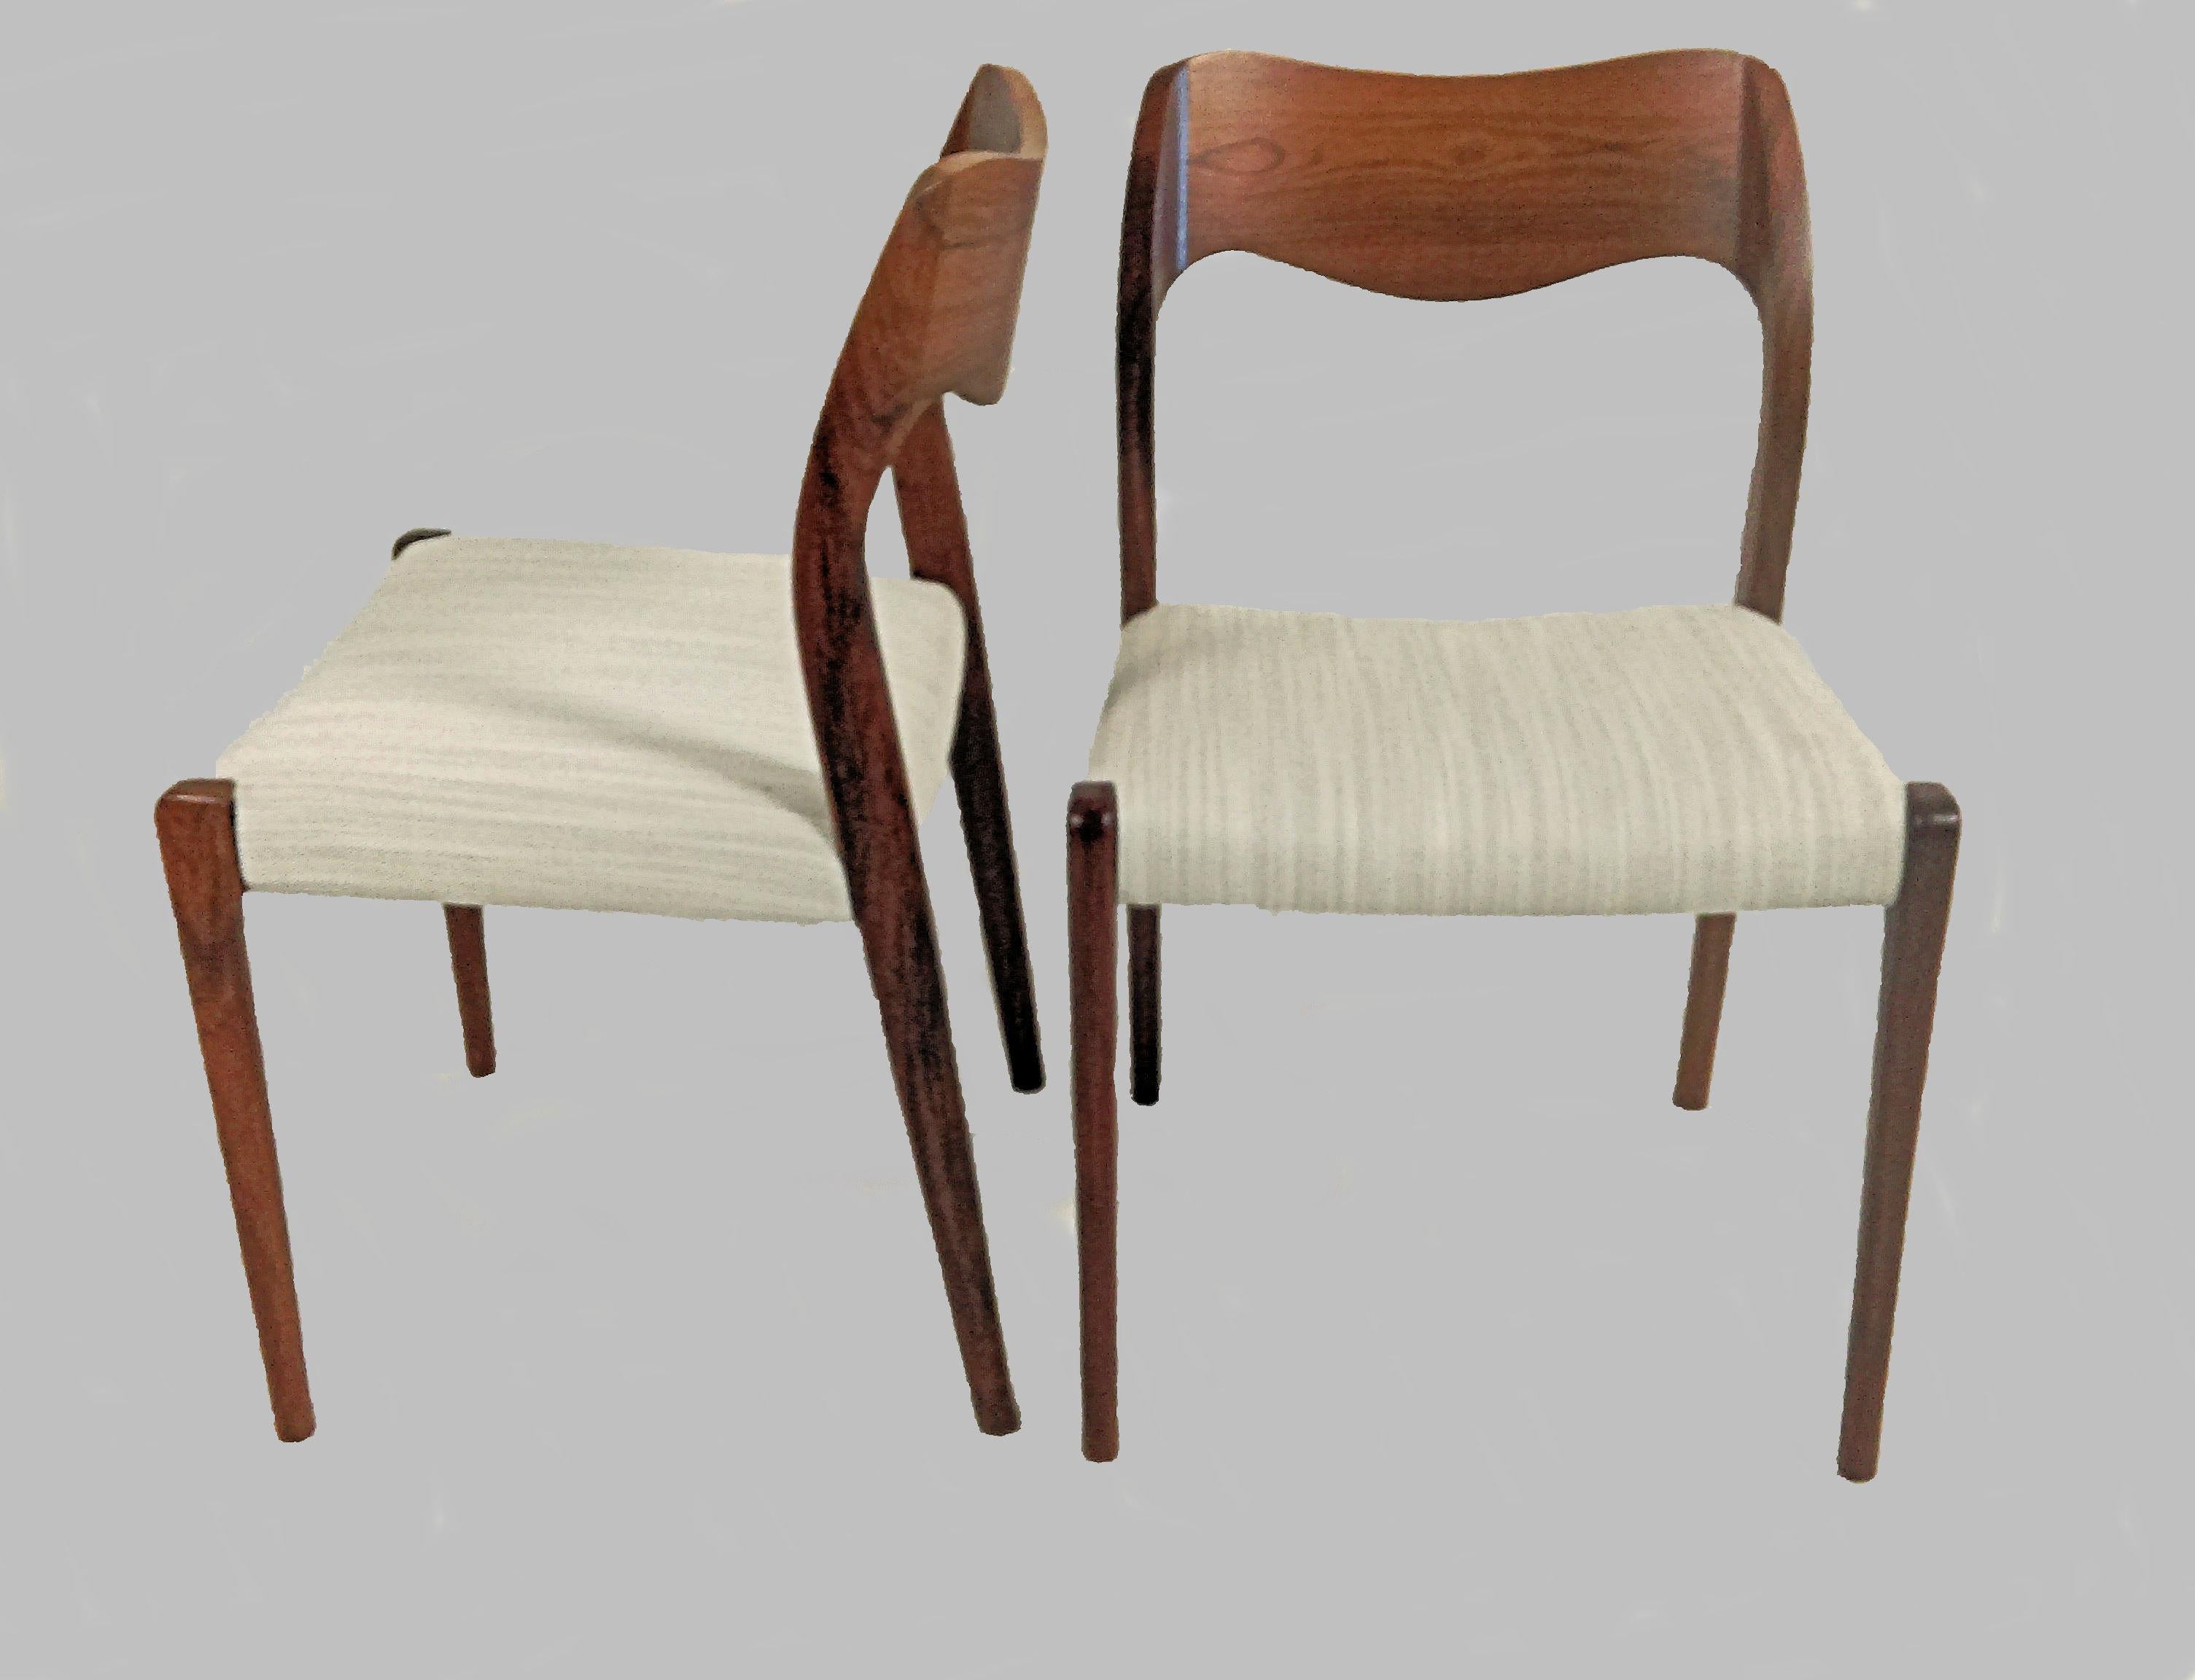 Ensemble de six chaises de salle à manger modèle 71 en bois de rose, conçues par Niels Otto Møller en 1951.

Les chaises sont dotées d'une structure et d'un dossier massifs en bois de rose, avec des pieds droits et un élégant dossier de forme